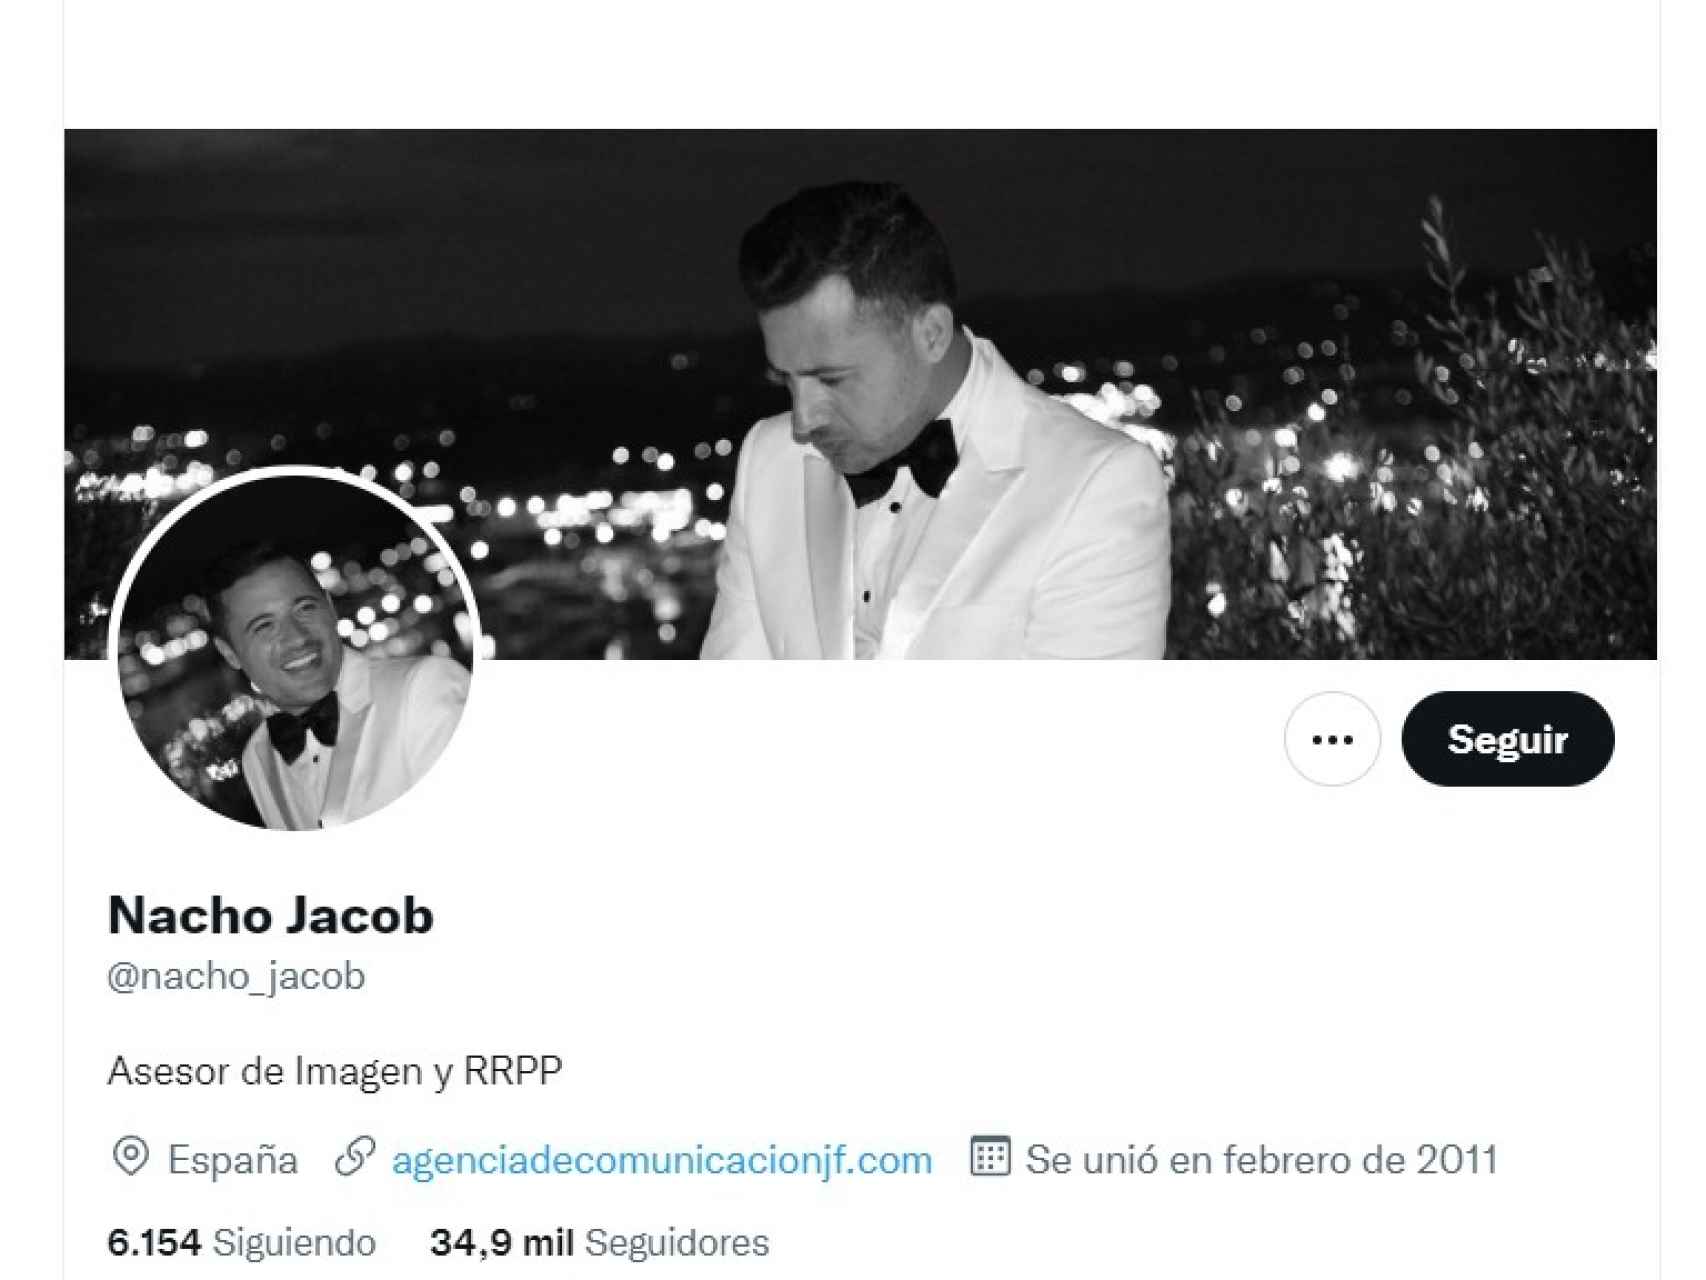 Imagen del perfil de Nacho Jacob en Twitter.